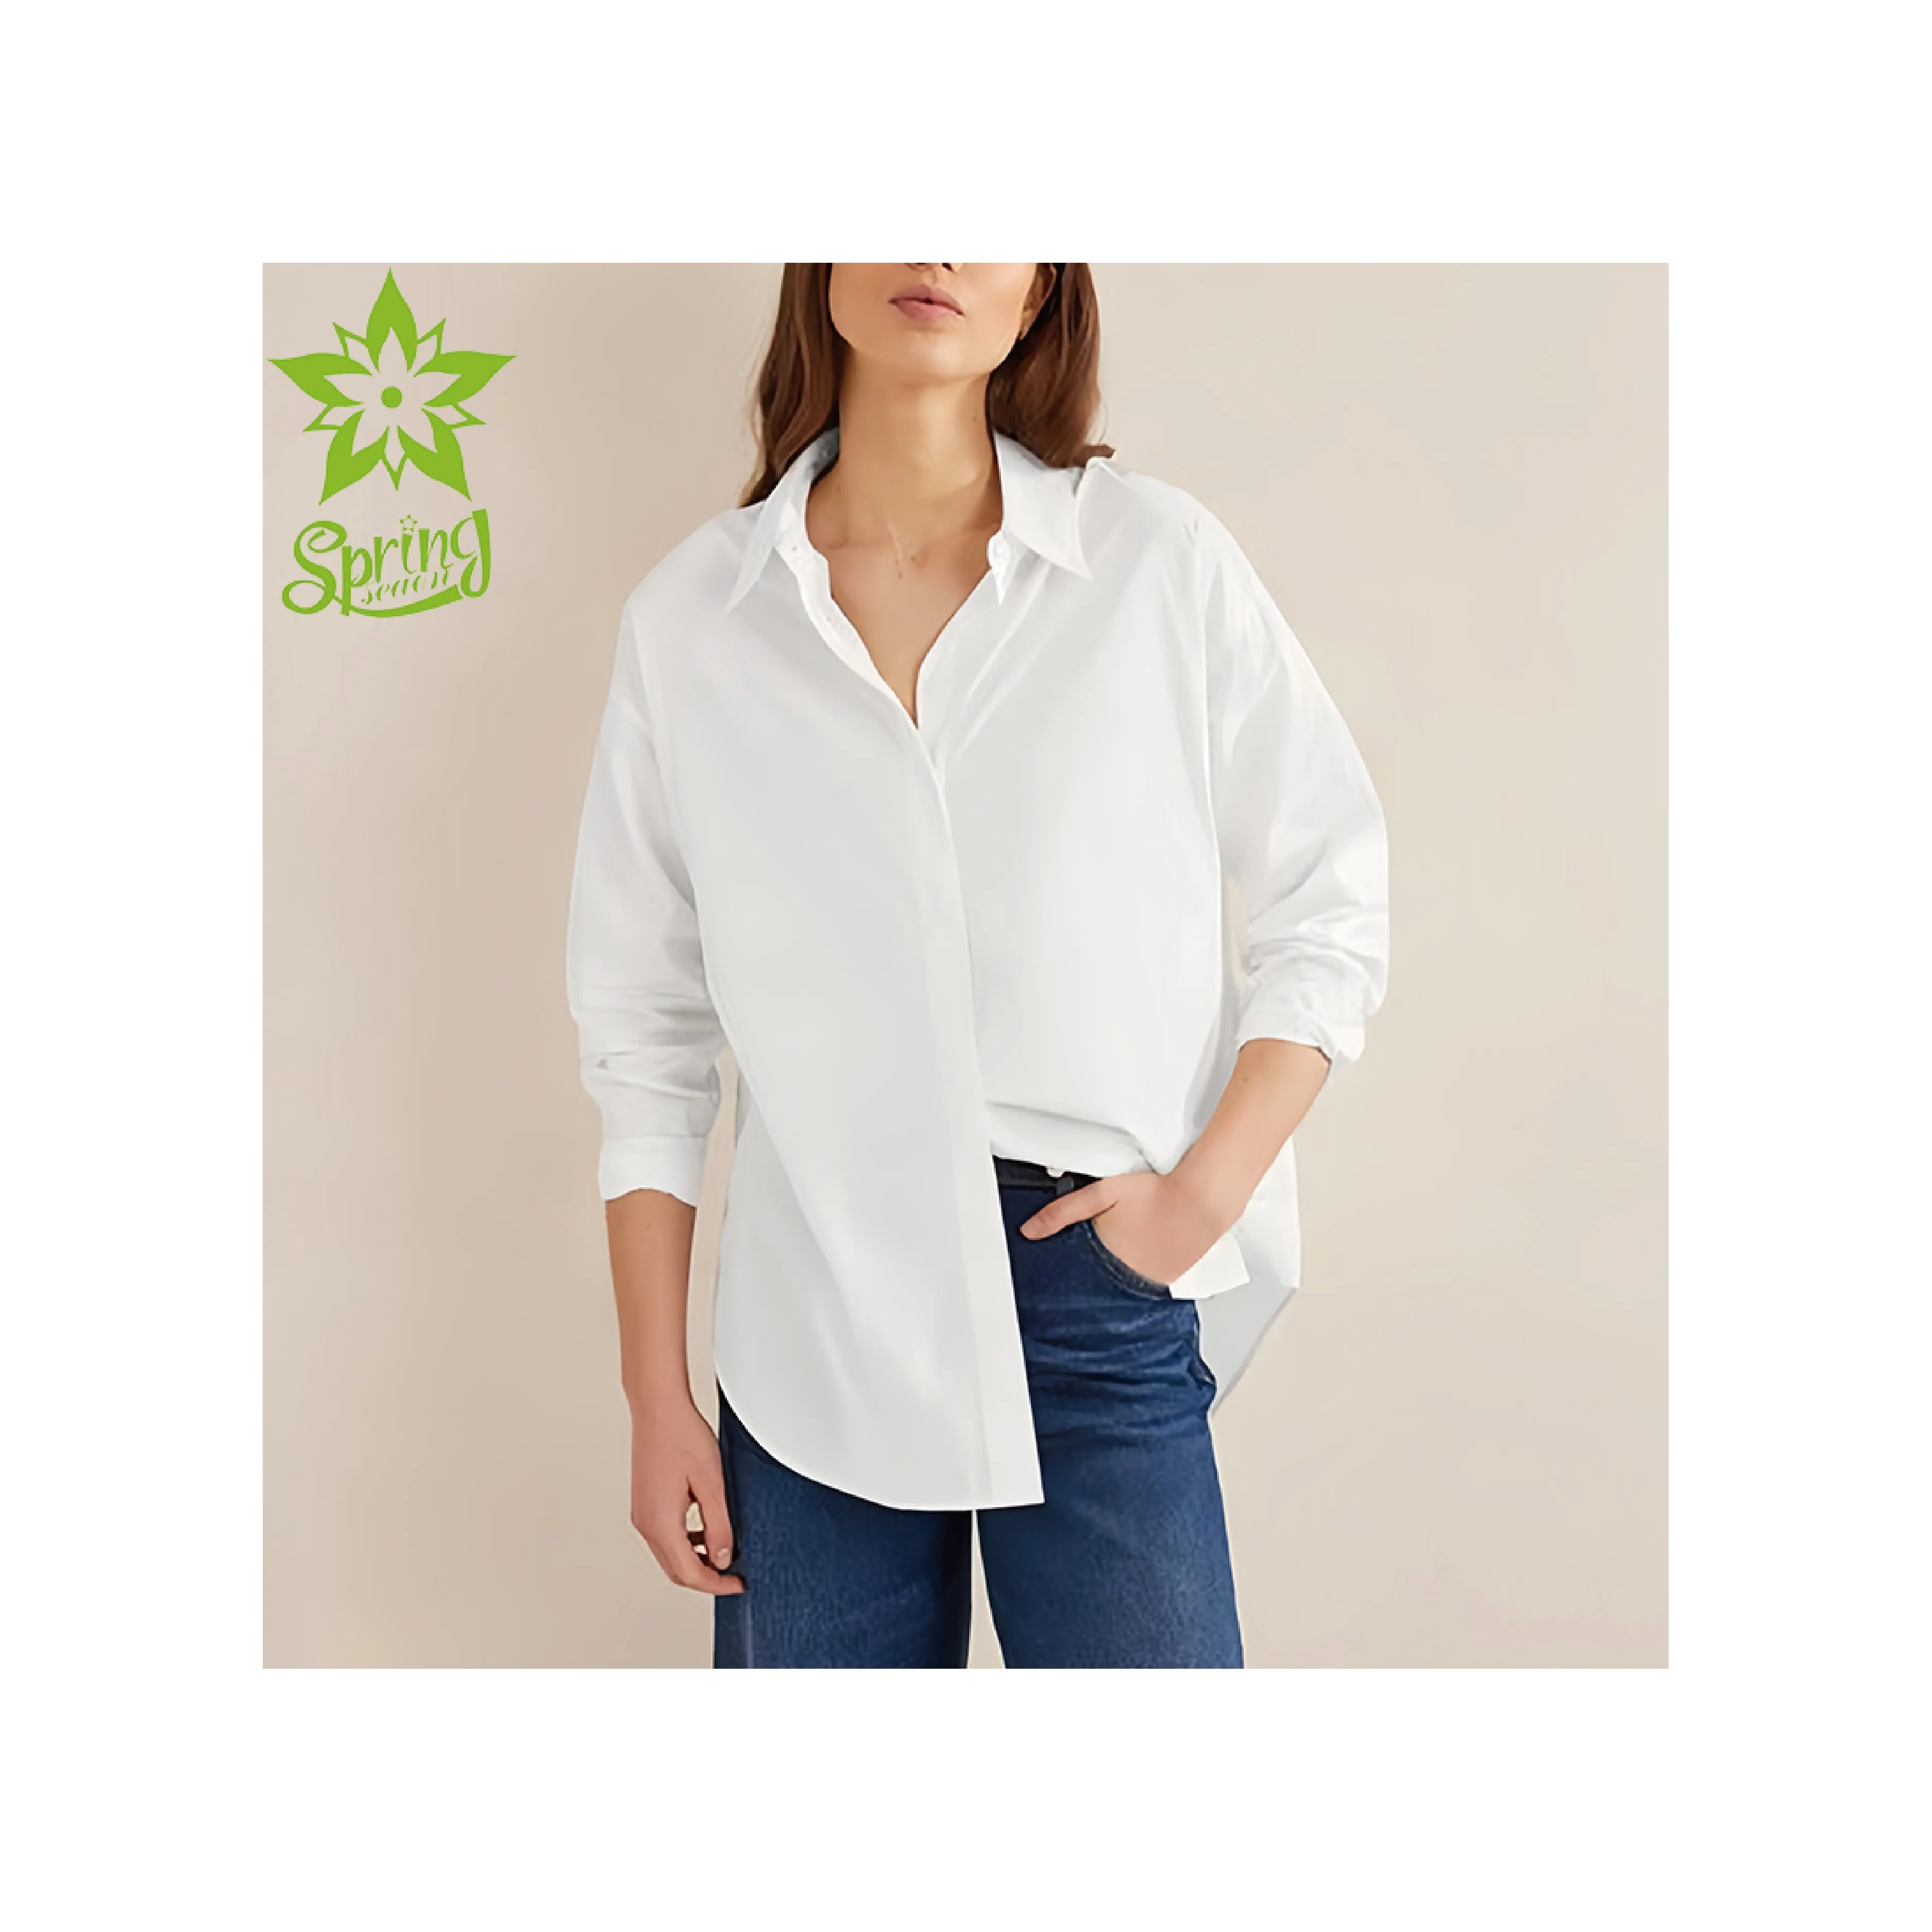 Nuovi arrivi camicette da donna personalizzate alla moda bianche oversize con bottoni eleganti camicie femminili camisas para mujer camicette da donna formali